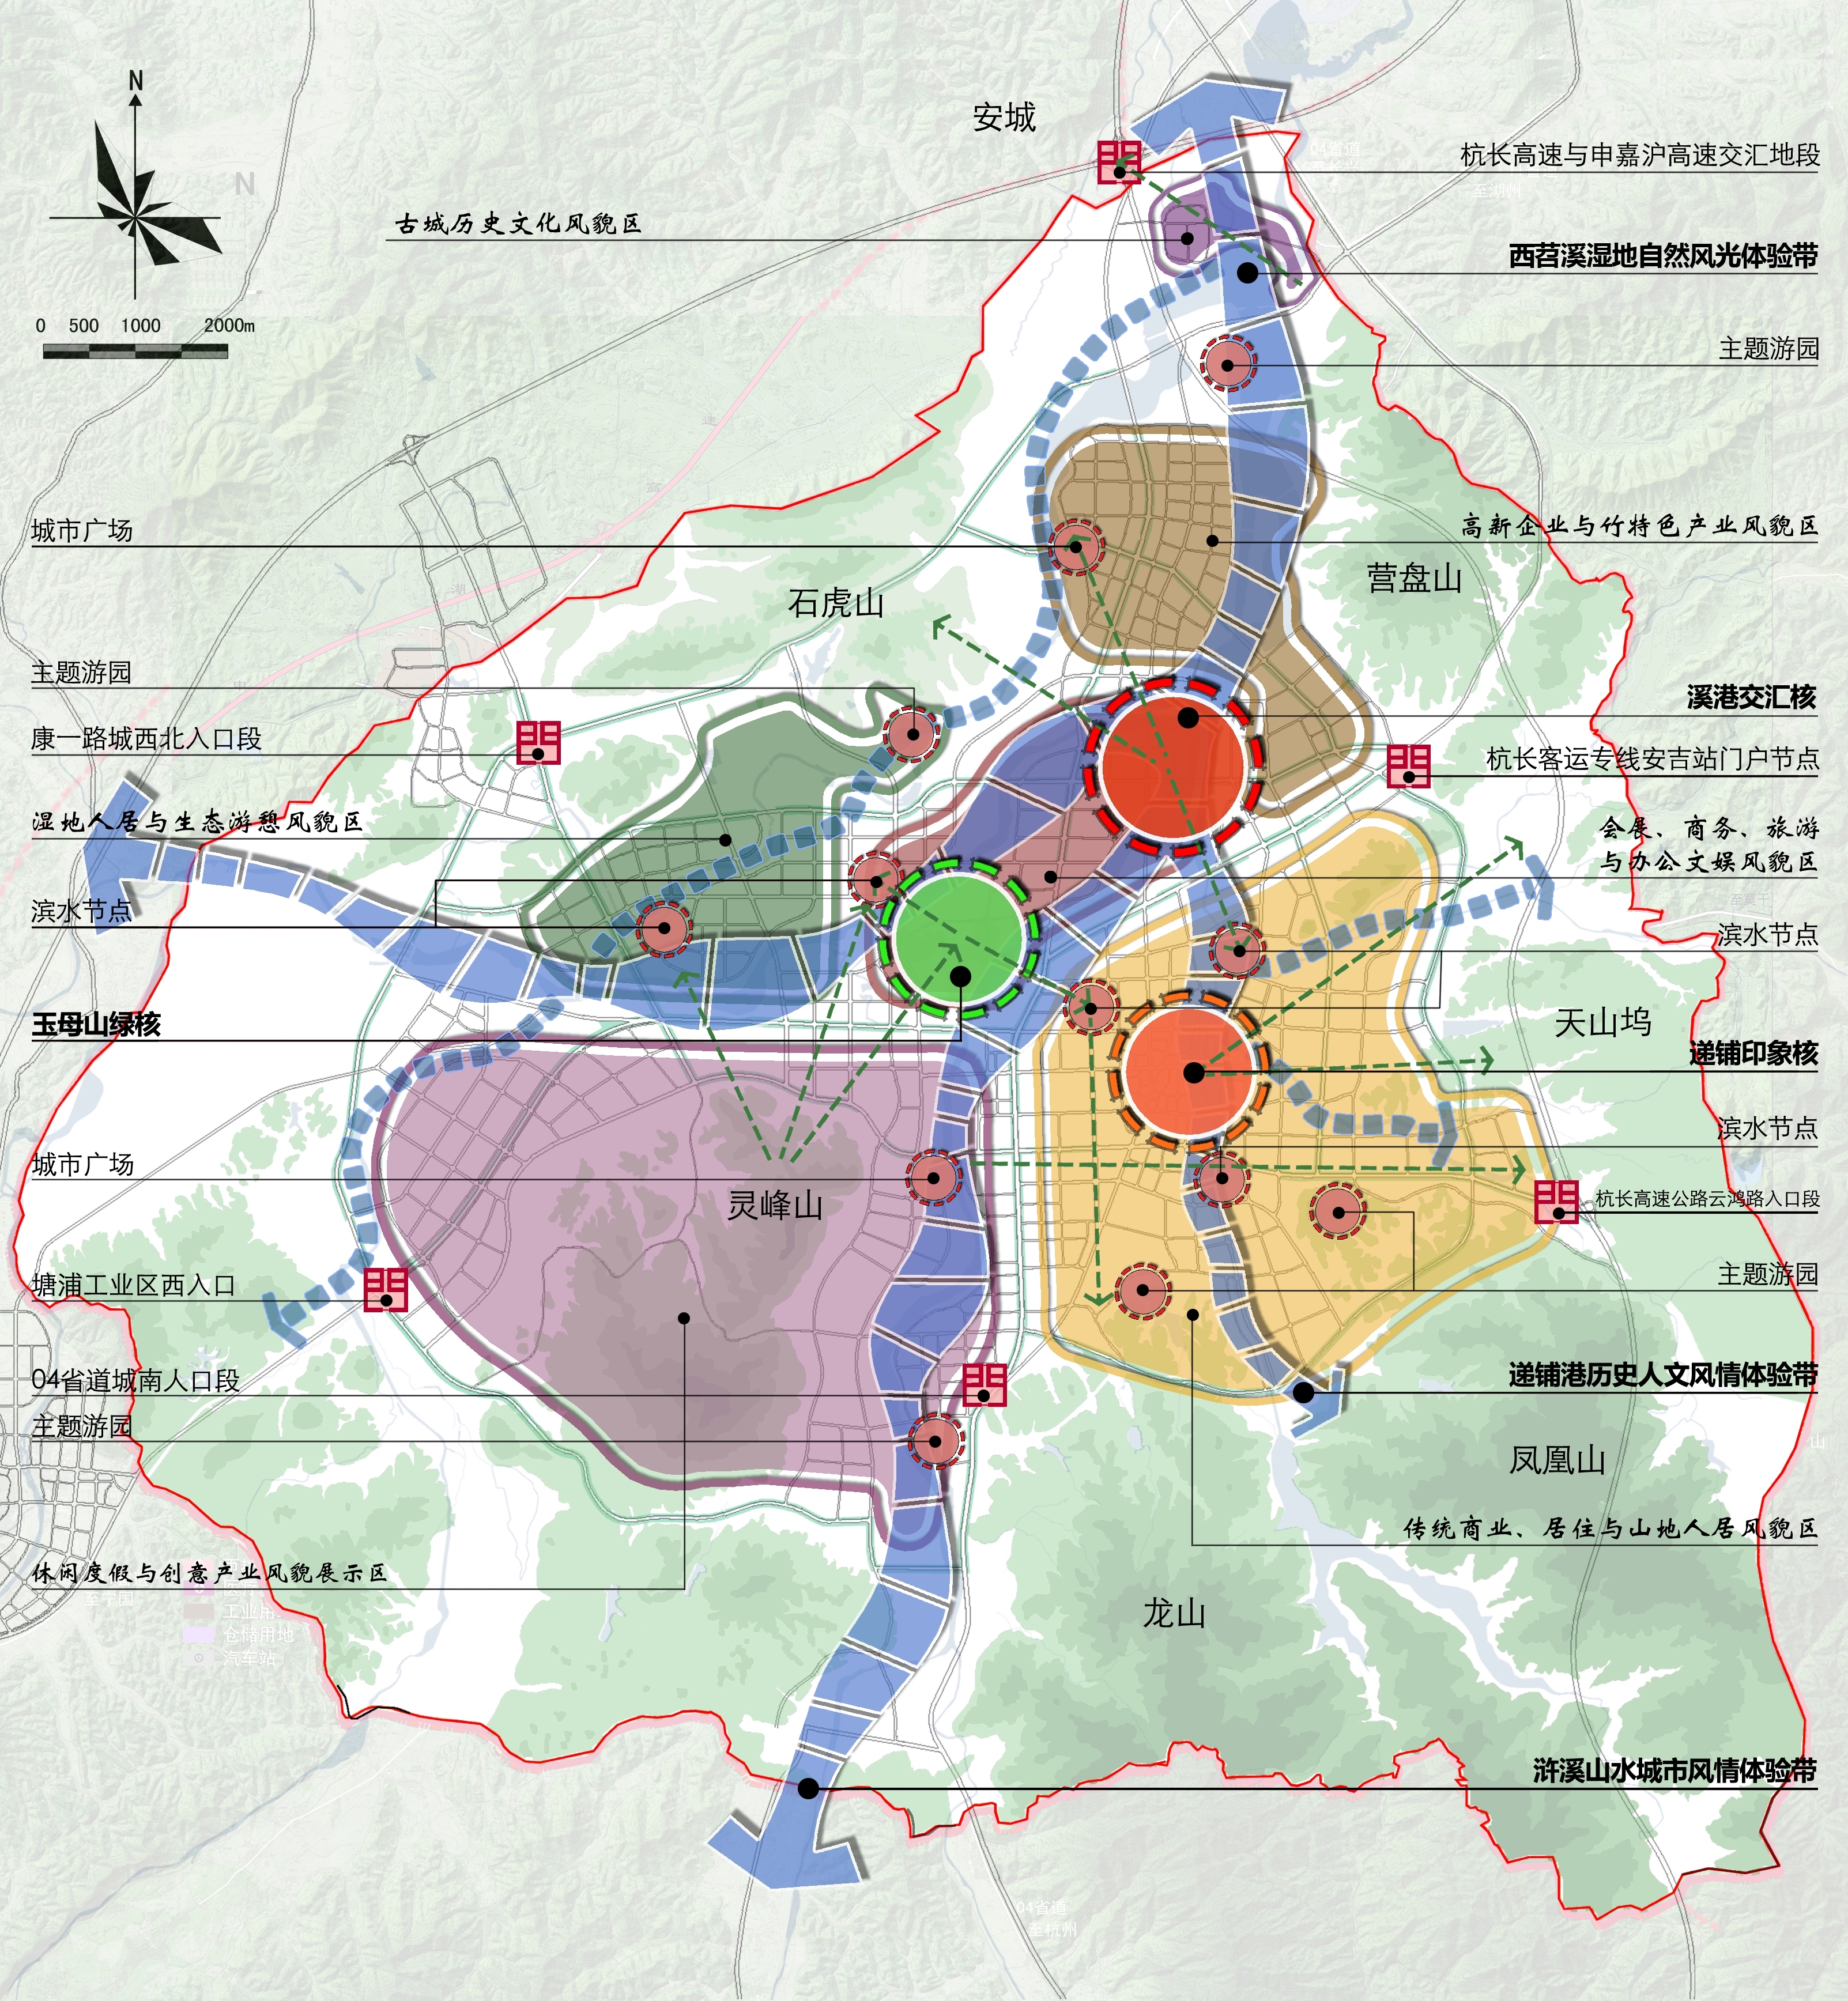 安吉县城总体城市设计及近期行动规划